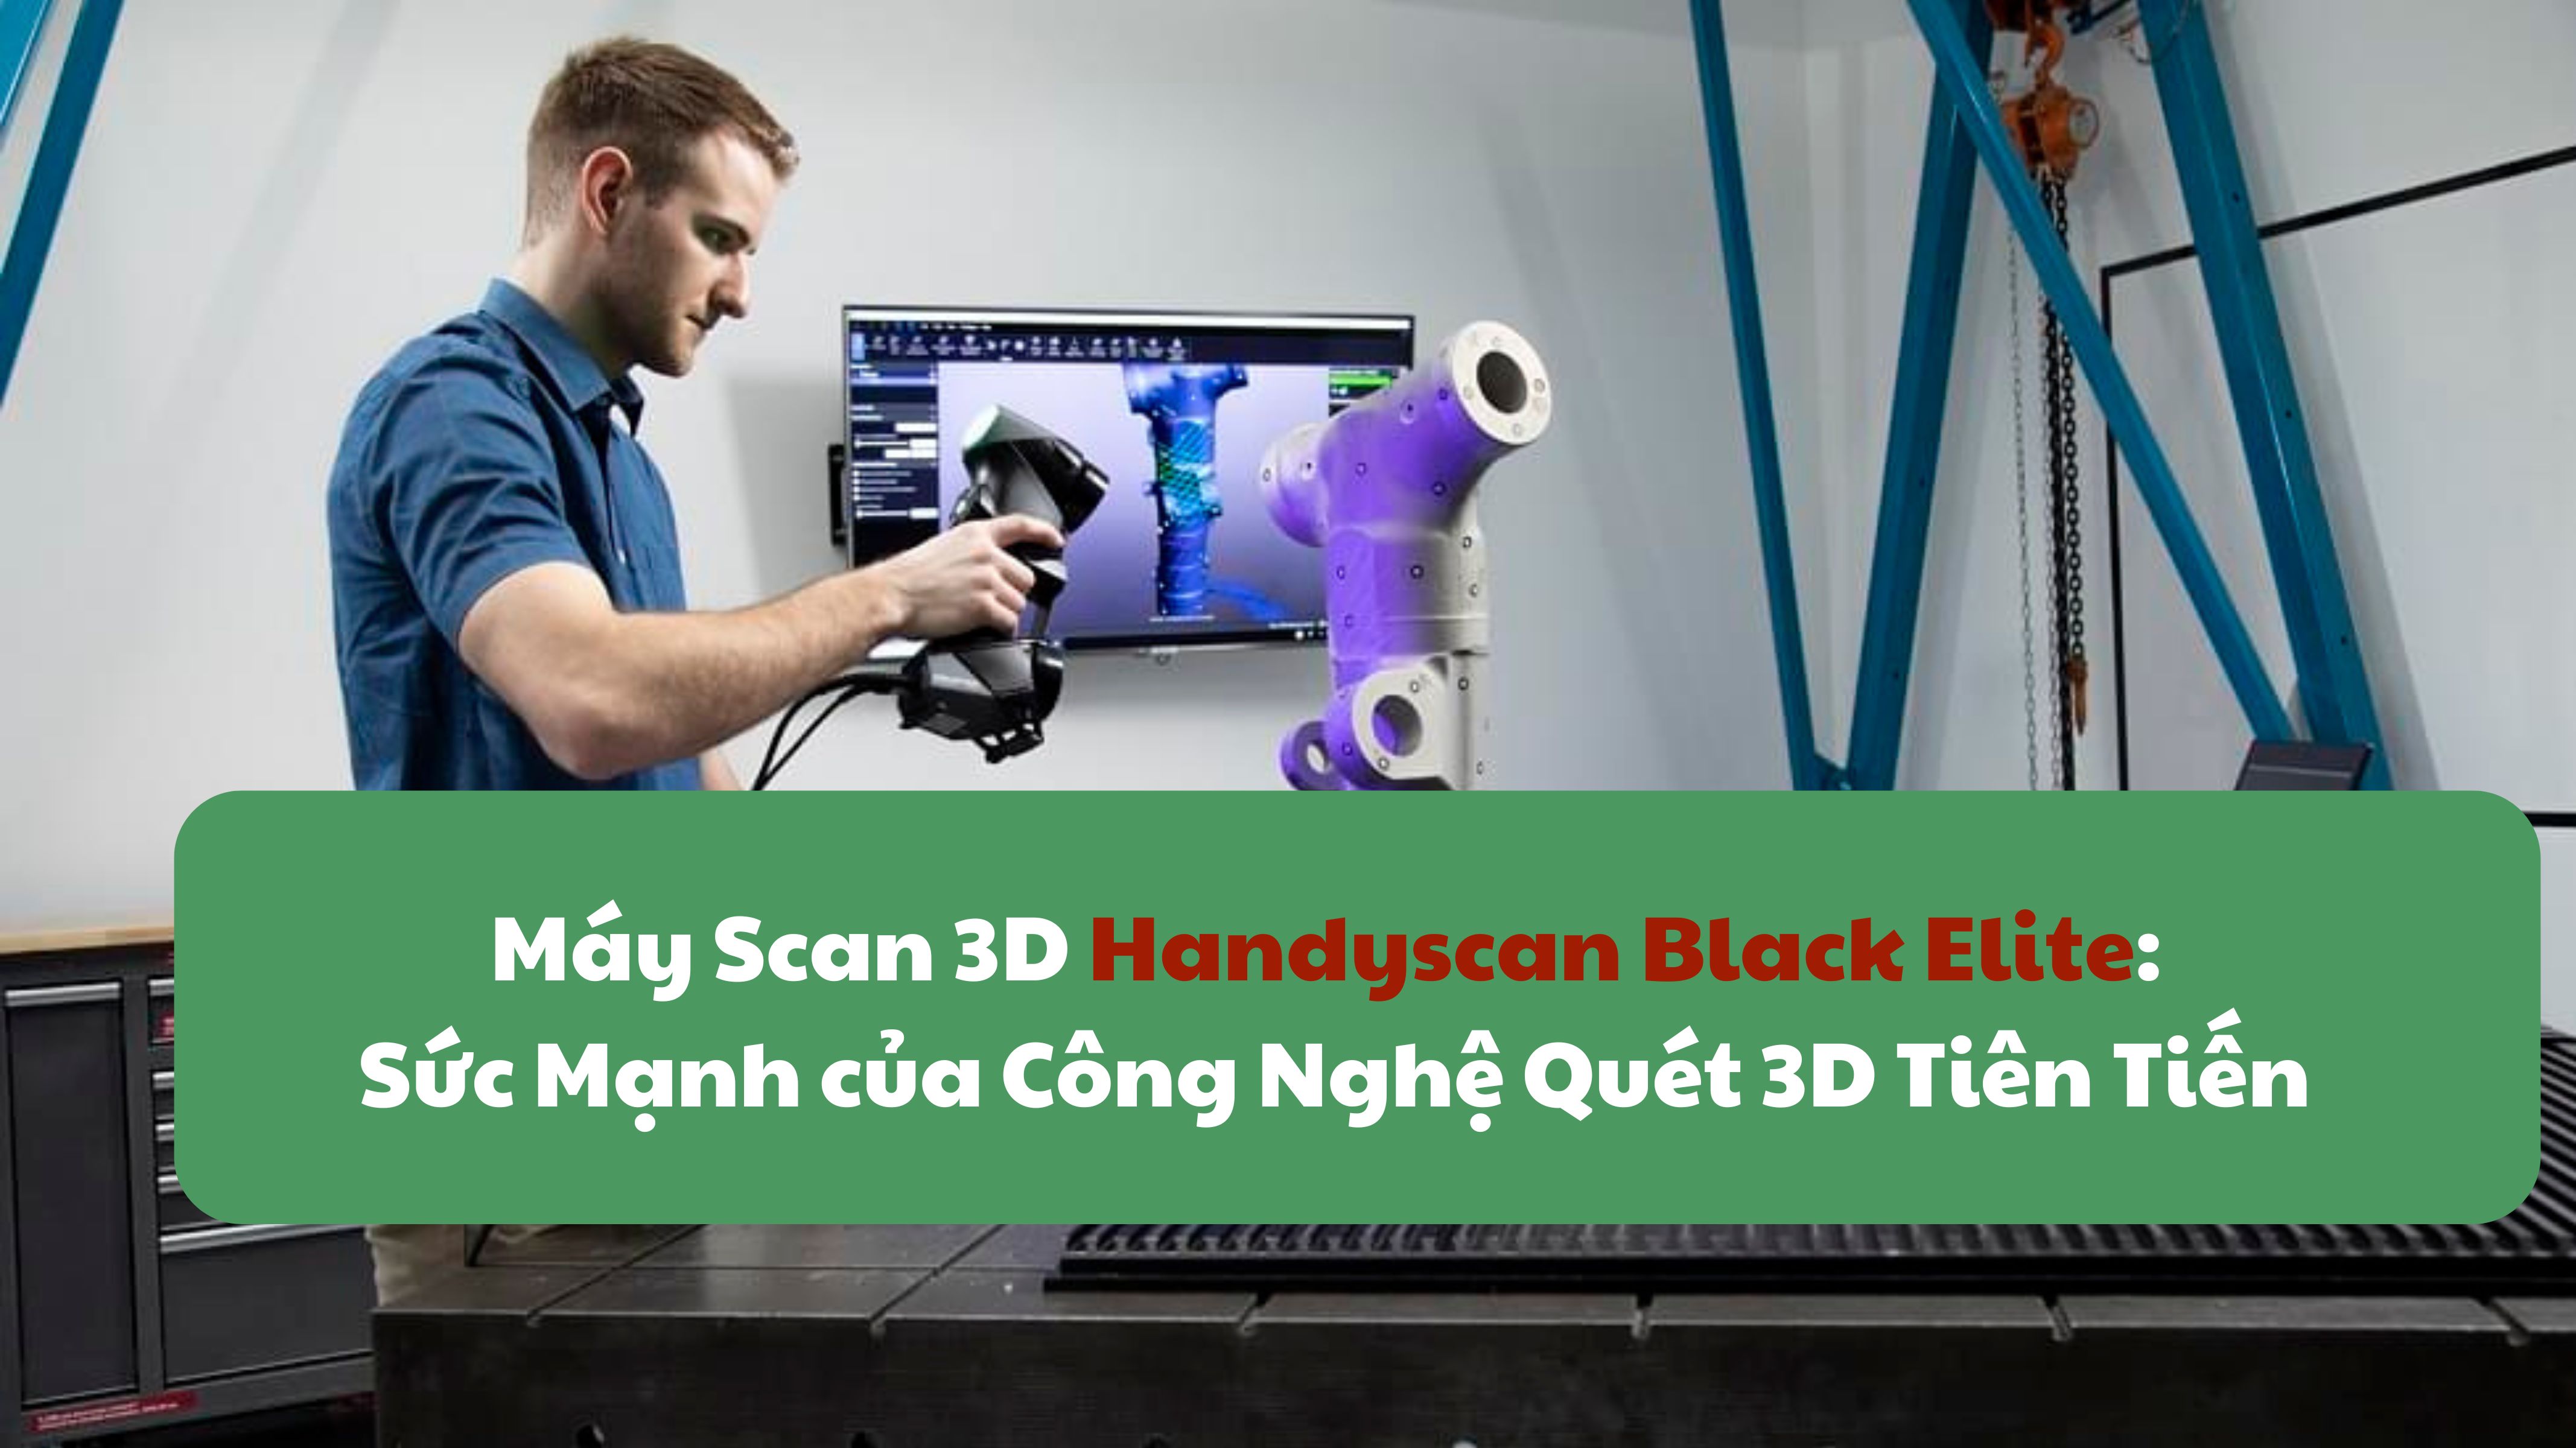 Máy Scan 3D Handyscan Black Elite: Sức Mạnh của Công Nghệ Quét 3D Tiên Tiến